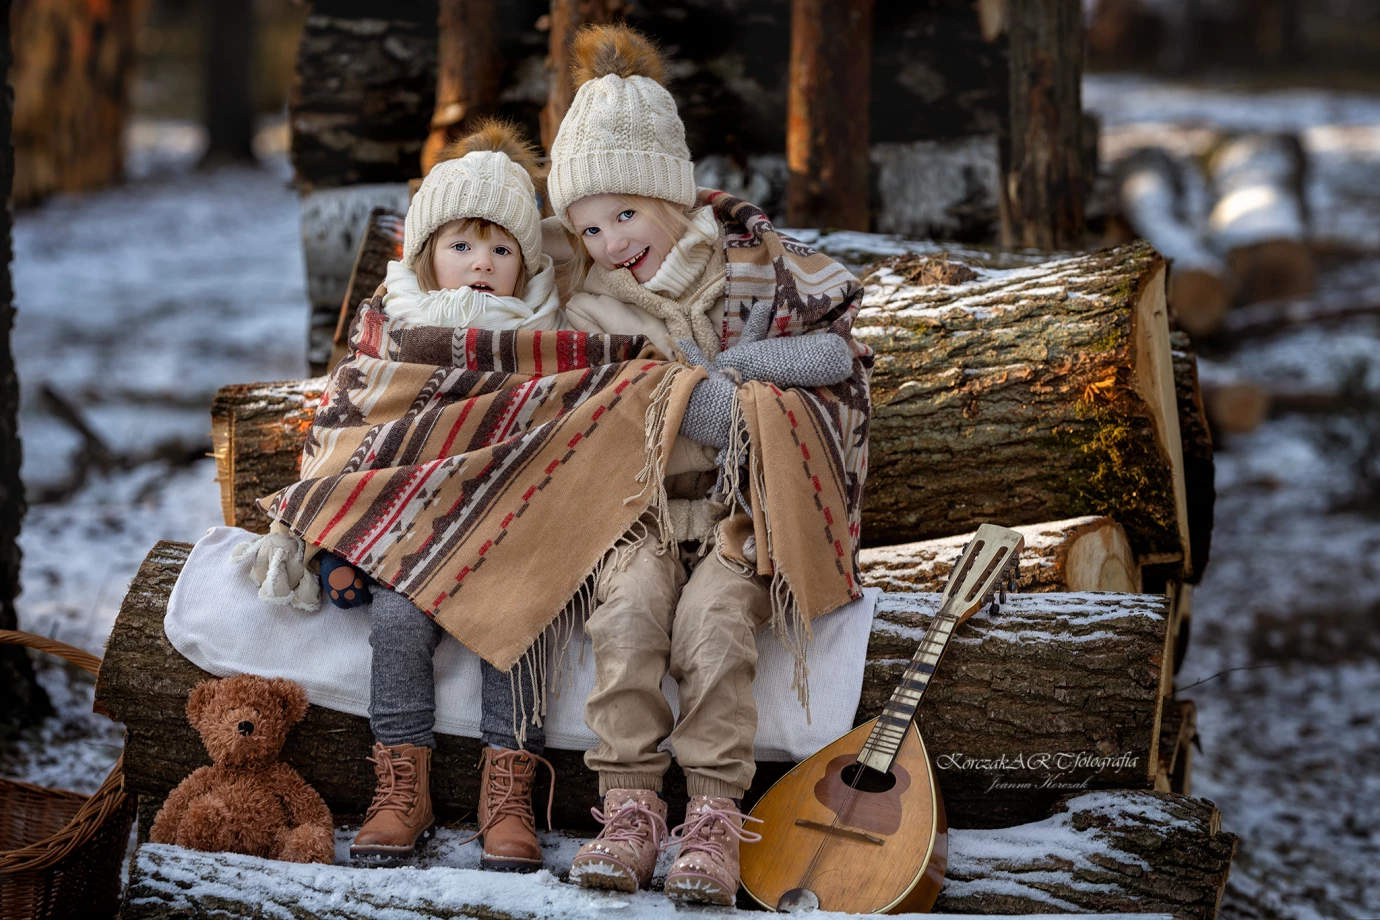 fotograf radzymin joanna-korczak-korczak-art-fotografia portfolio zimowe sesje zdjeciowe zima snieg